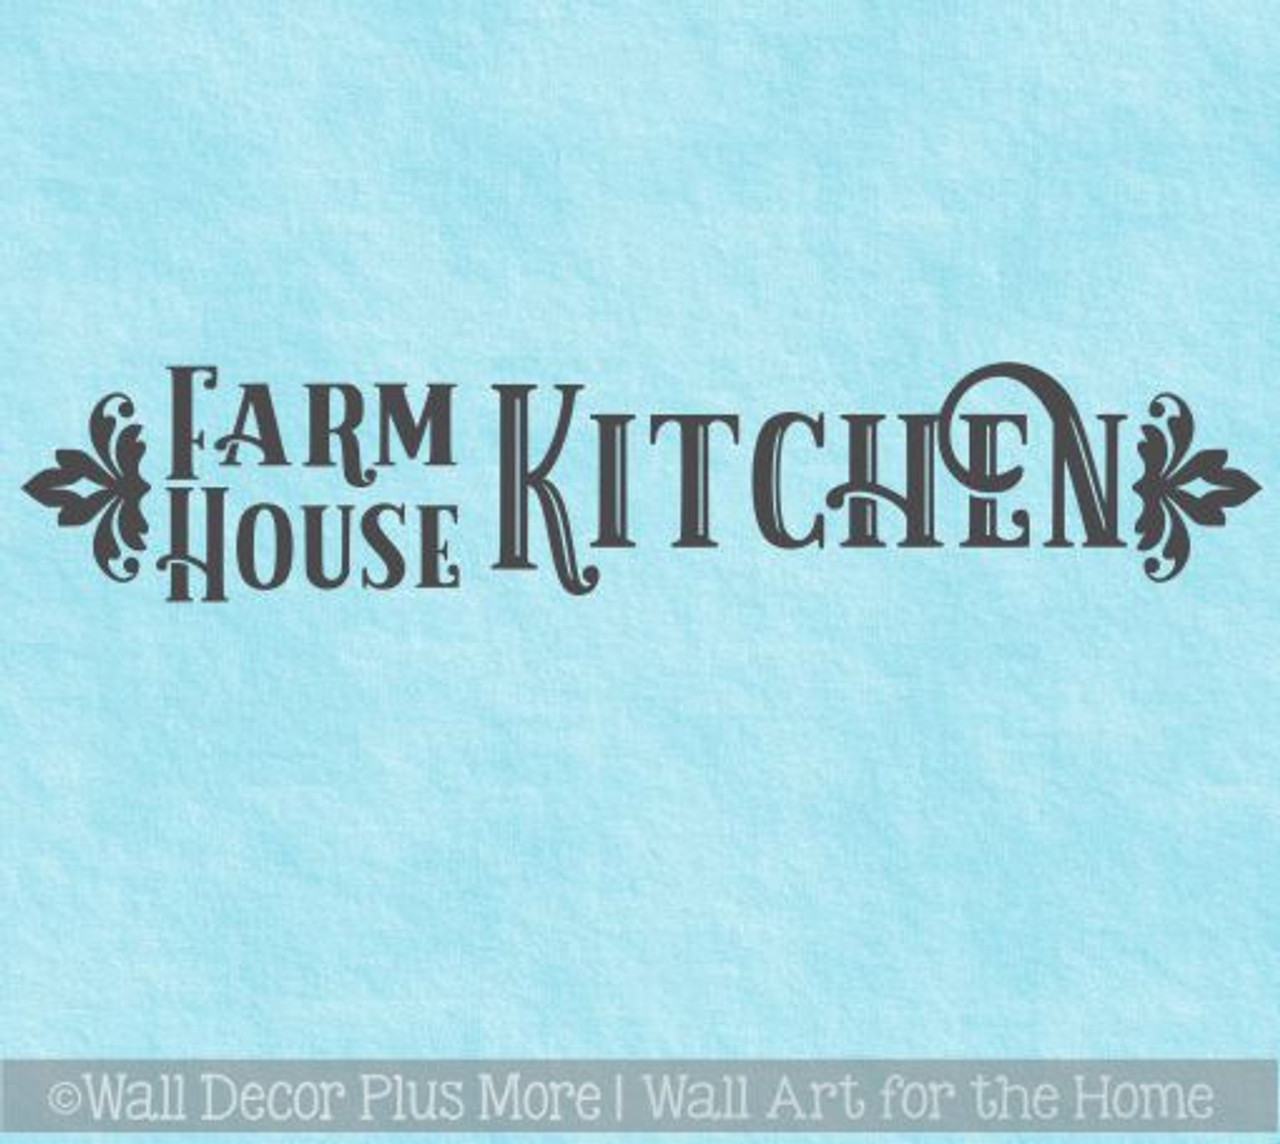 Kitchen Wall Art Farmhouse kitchen Wall Decor In This Kitchen